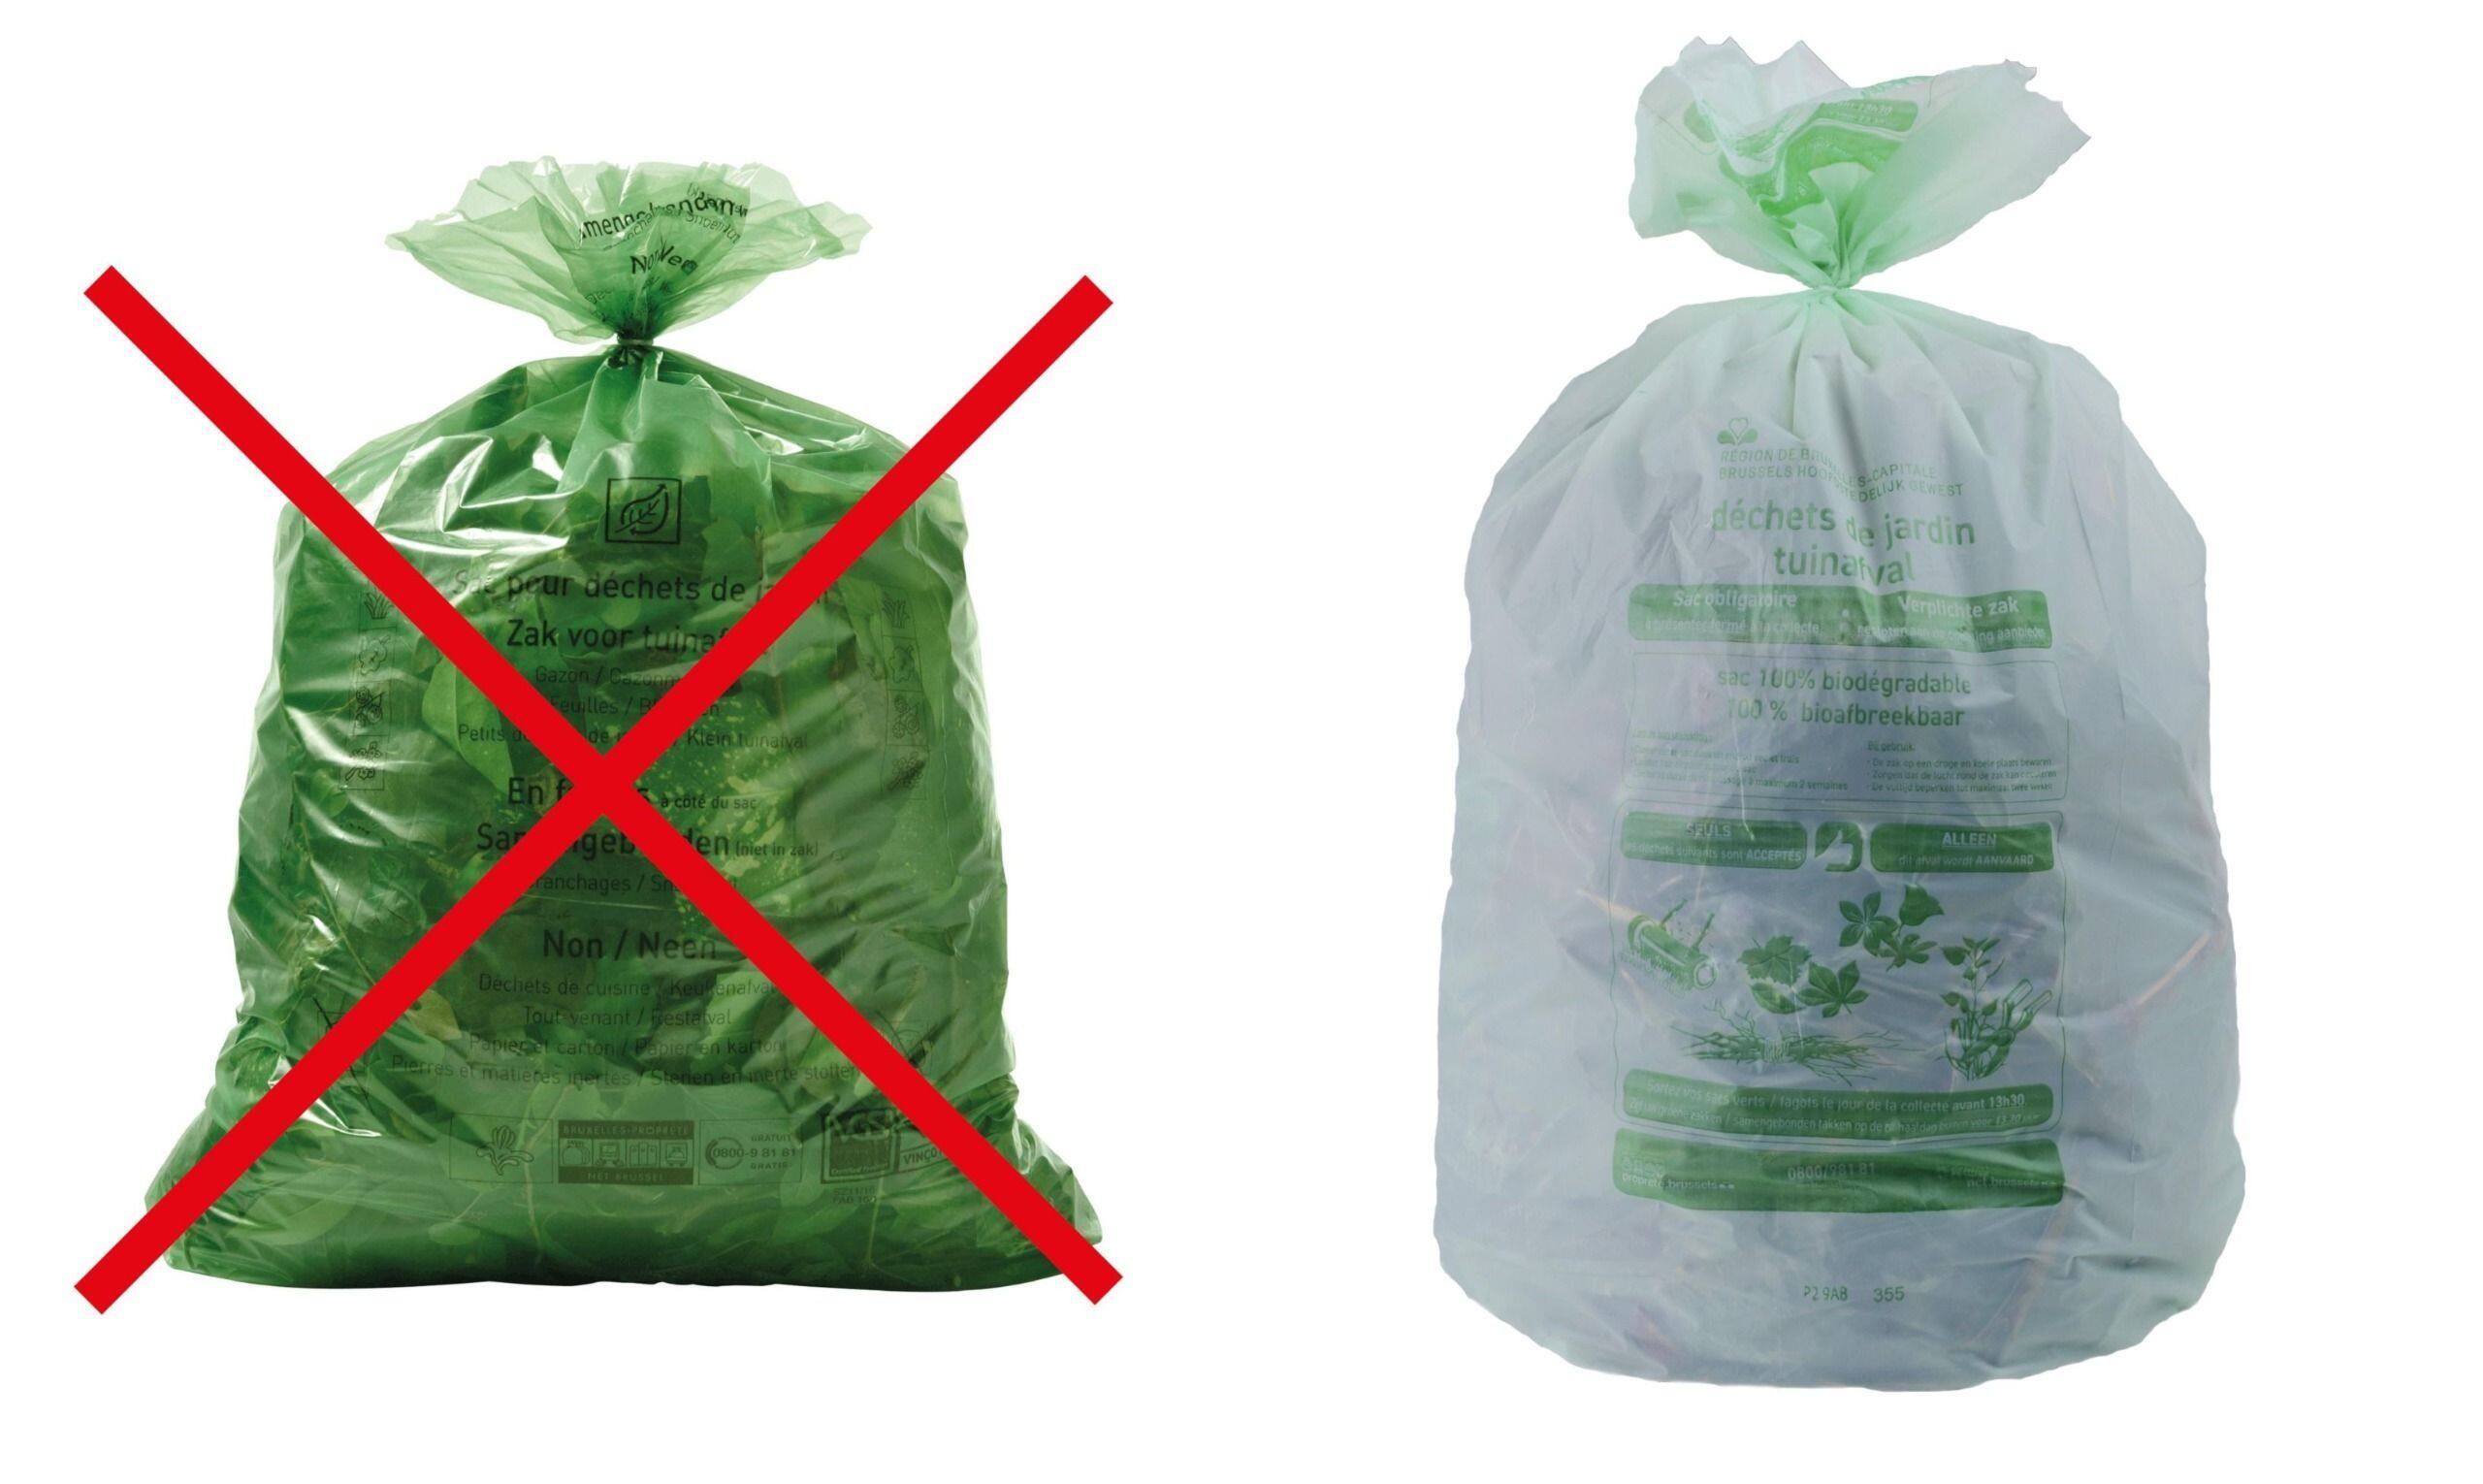 Du changement pour les sacs vert de déchets organiques en Brabant